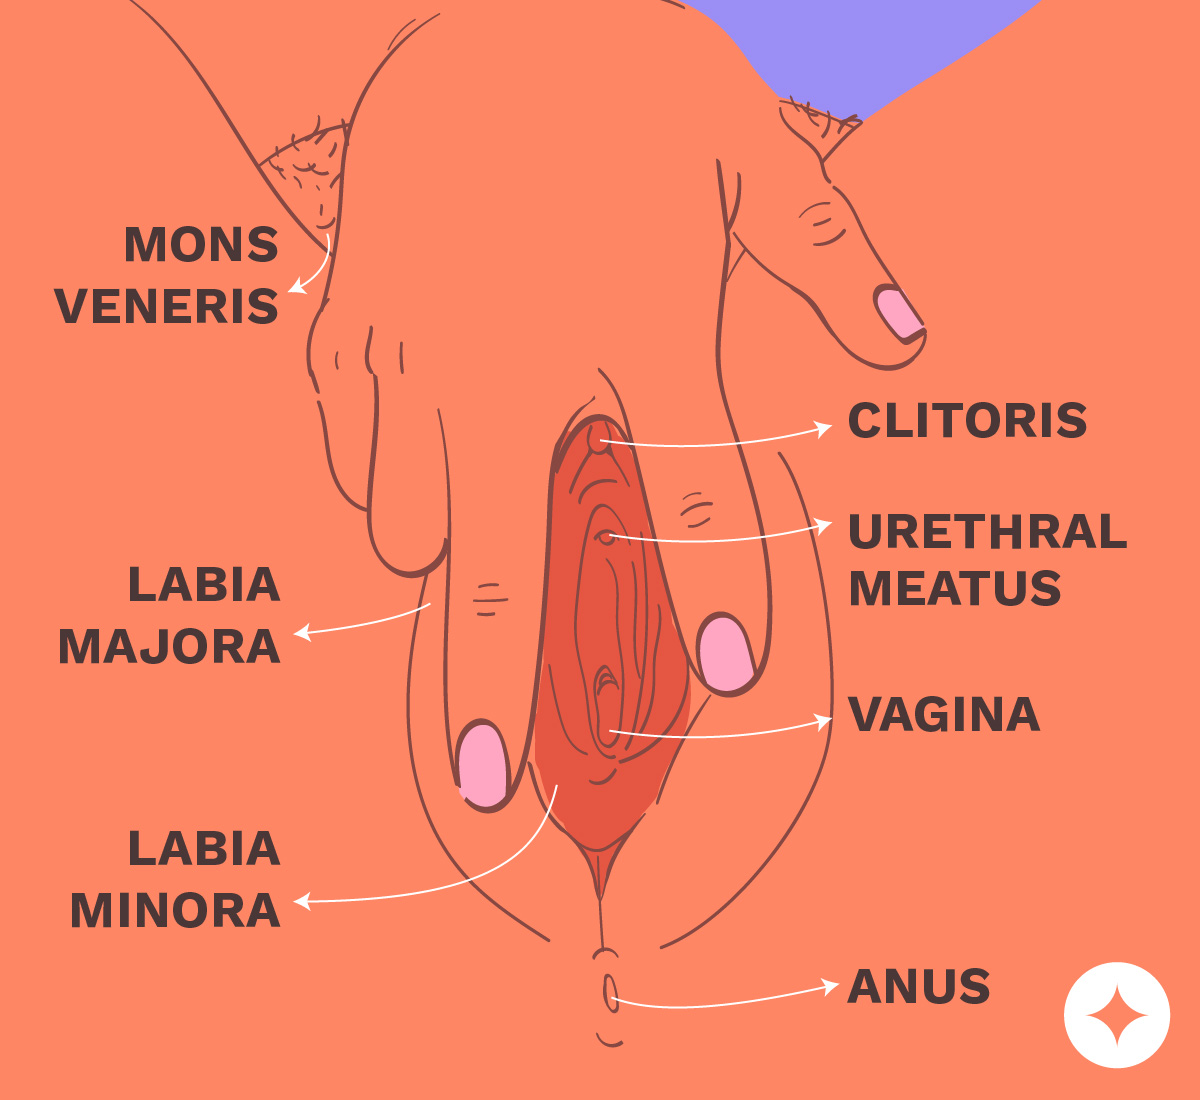 Clitorus discharging on penis